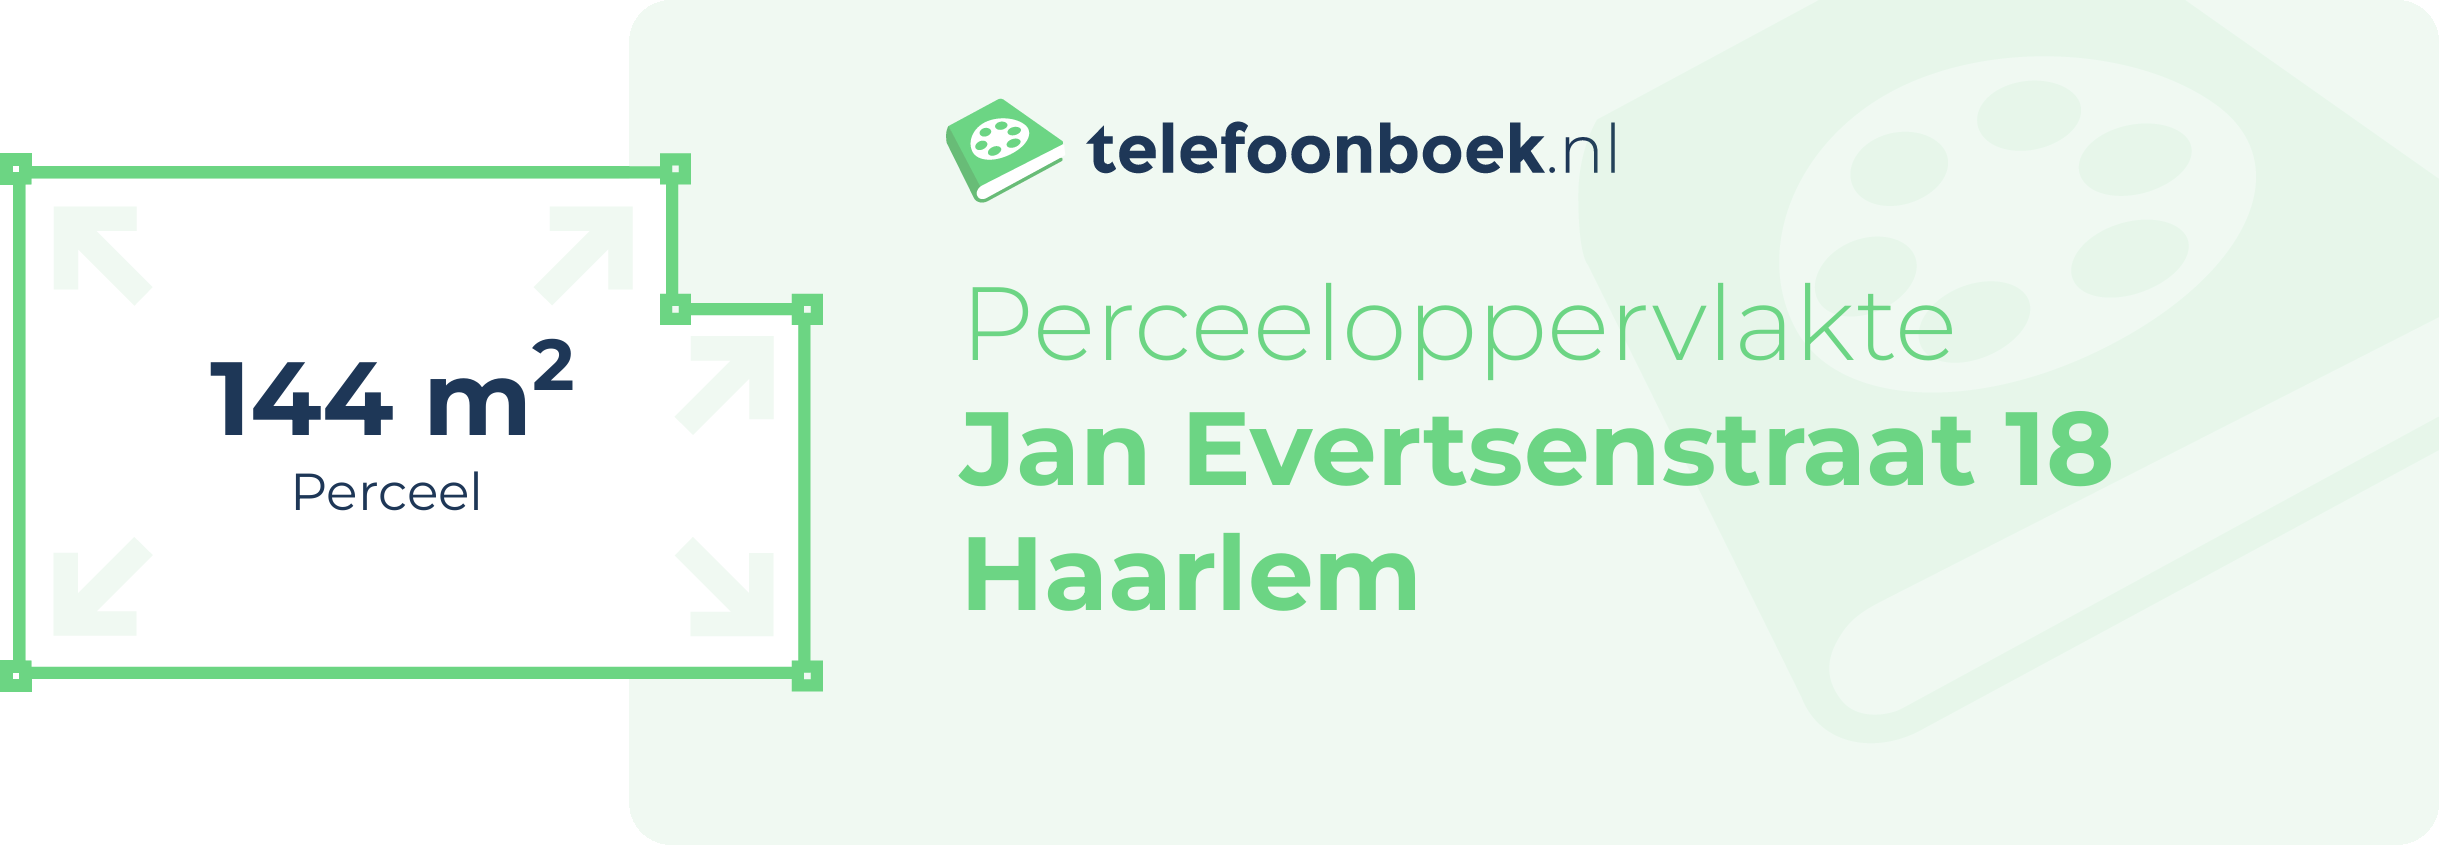 Perceeloppervlakte Jan Evertsenstraat 18 Haarlem